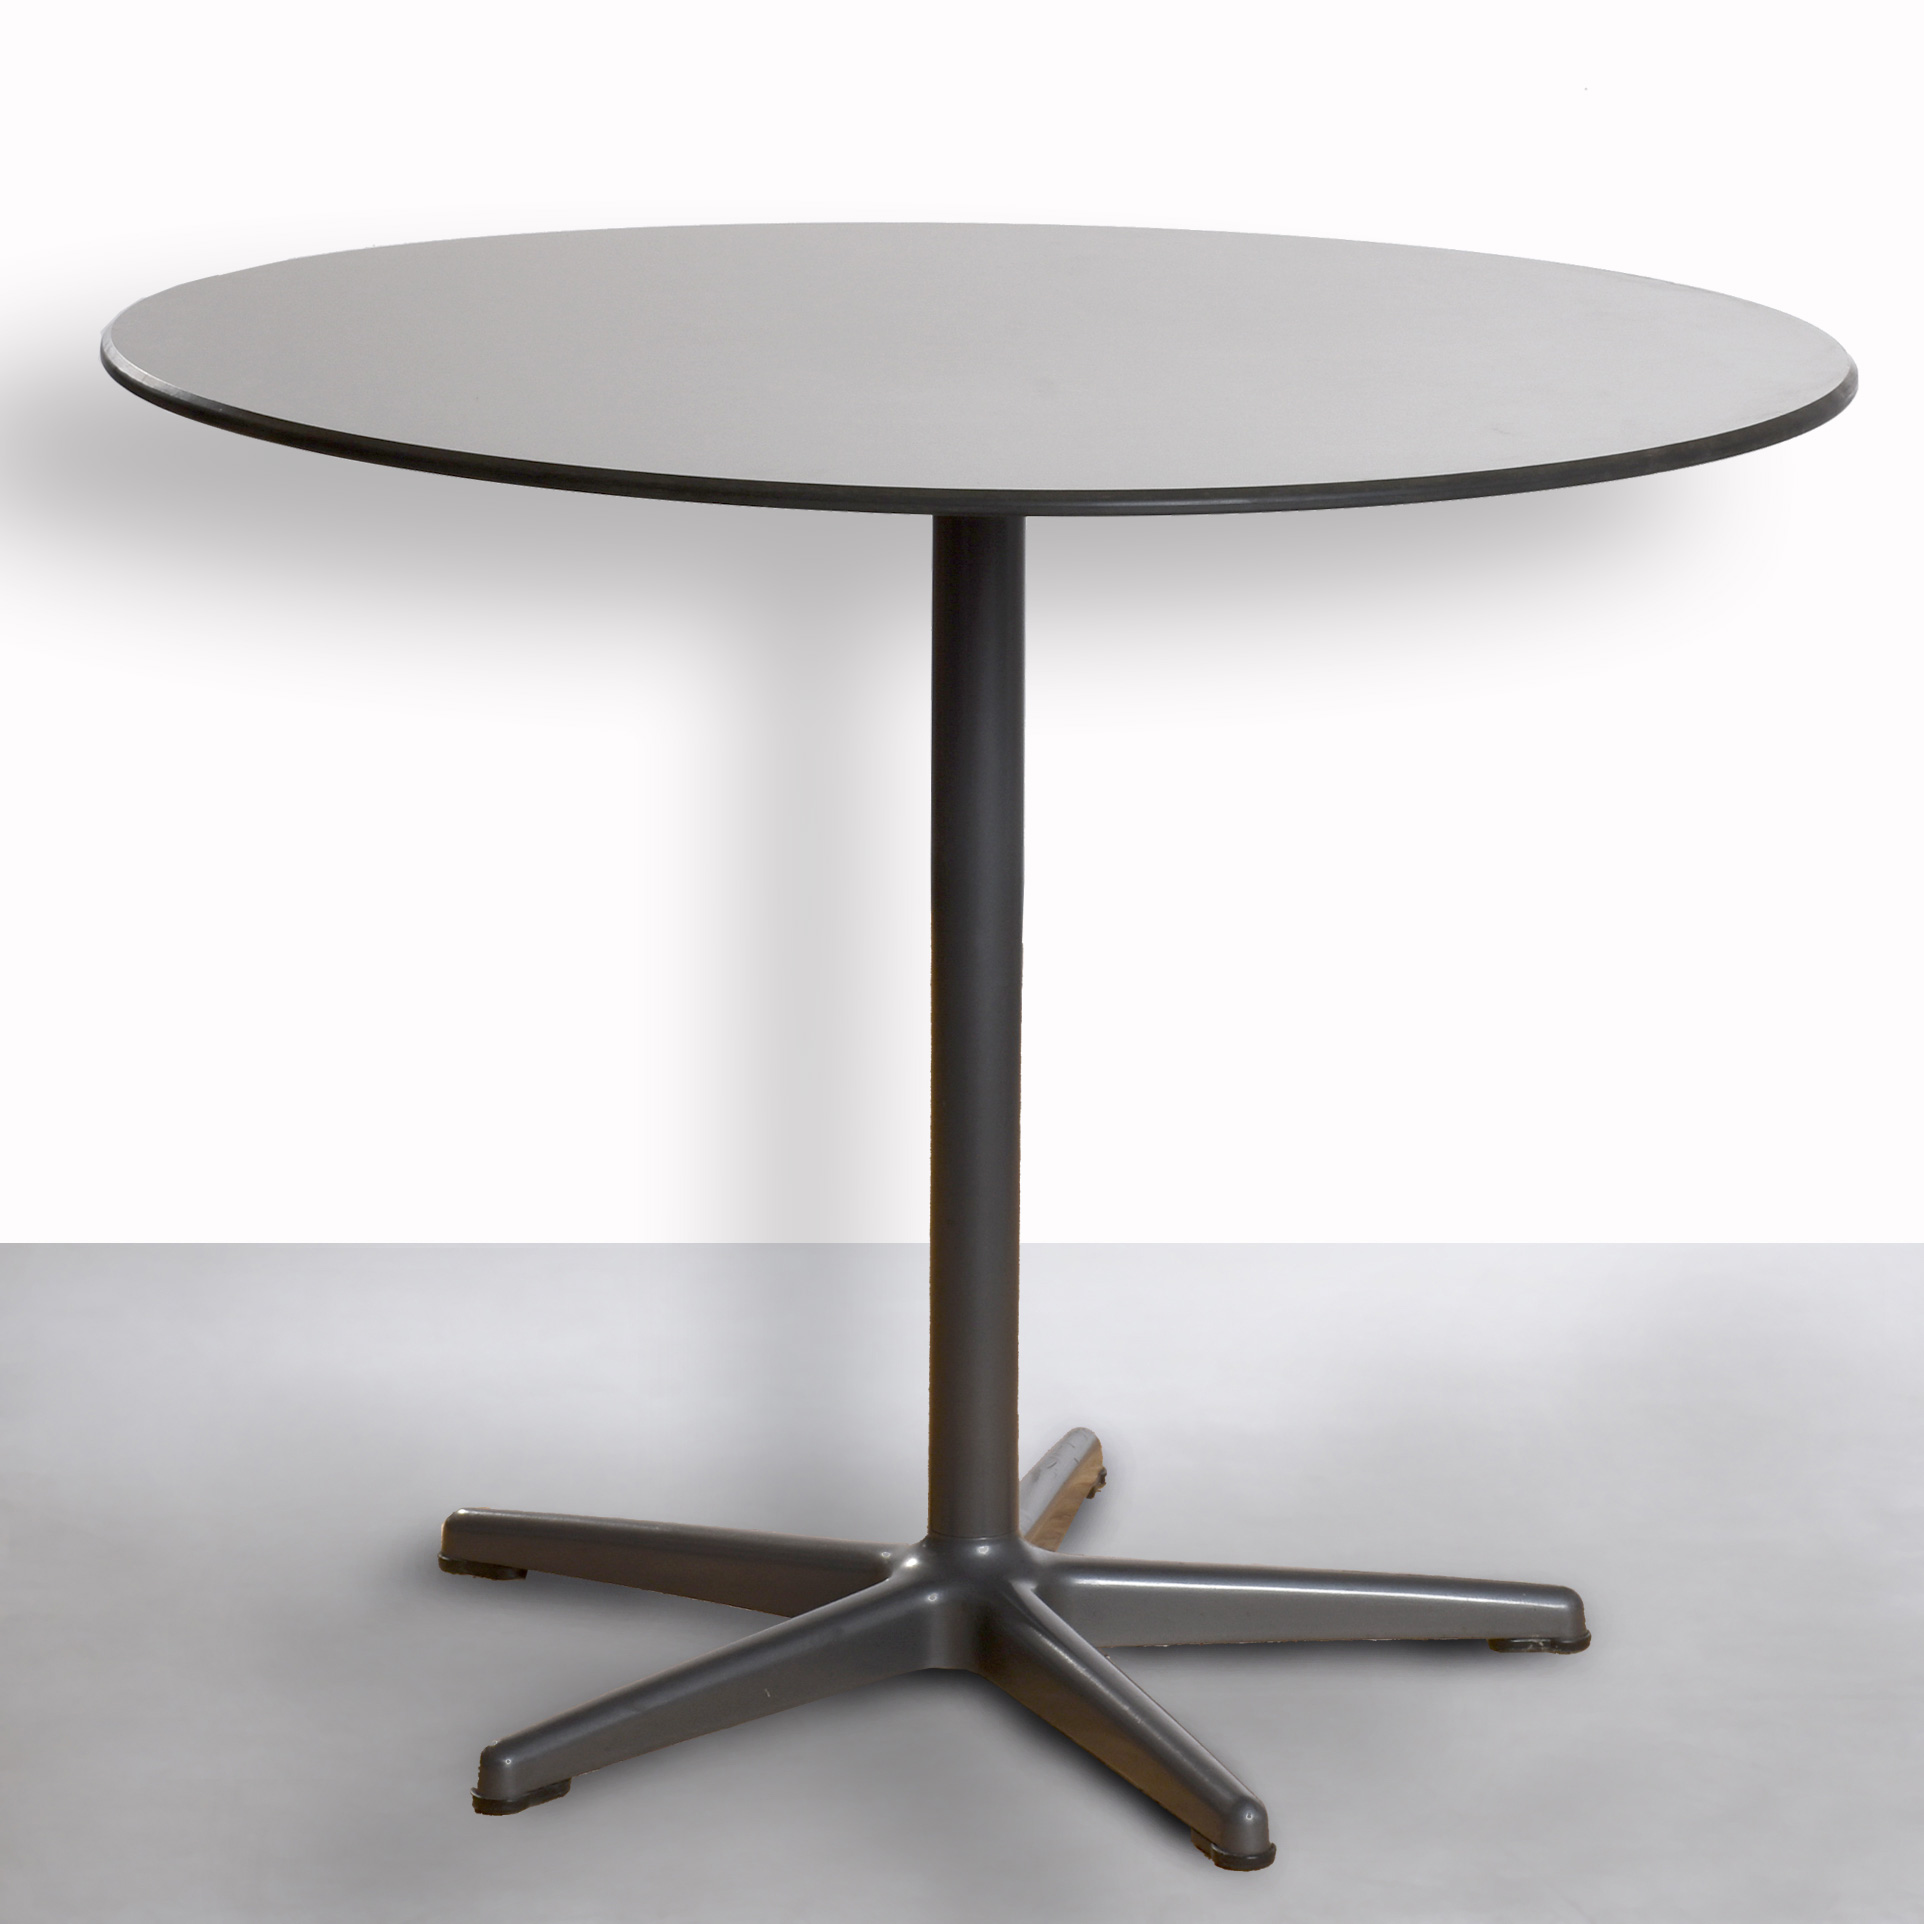 Tisch, von AHREND, Bürotisch mit  runder  Holzplatte anthrazit 12mm dicke, stabilen Metallfuß, Ø 90,